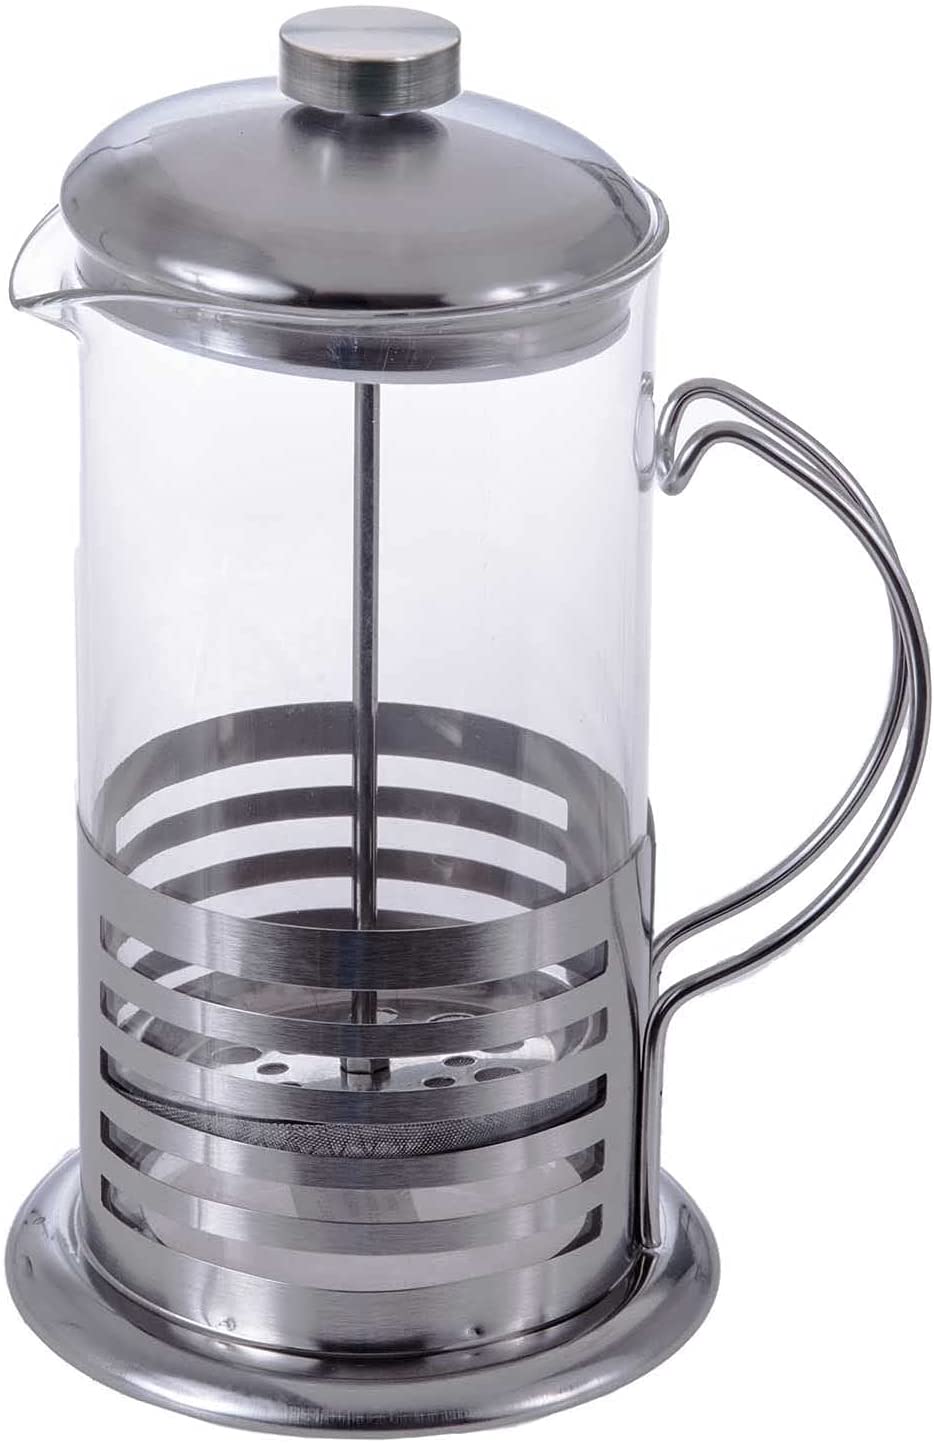 Sidco® XL Tea Maker Coffee Maker Coffee Maker Coffee Press Teapot 1.0 L